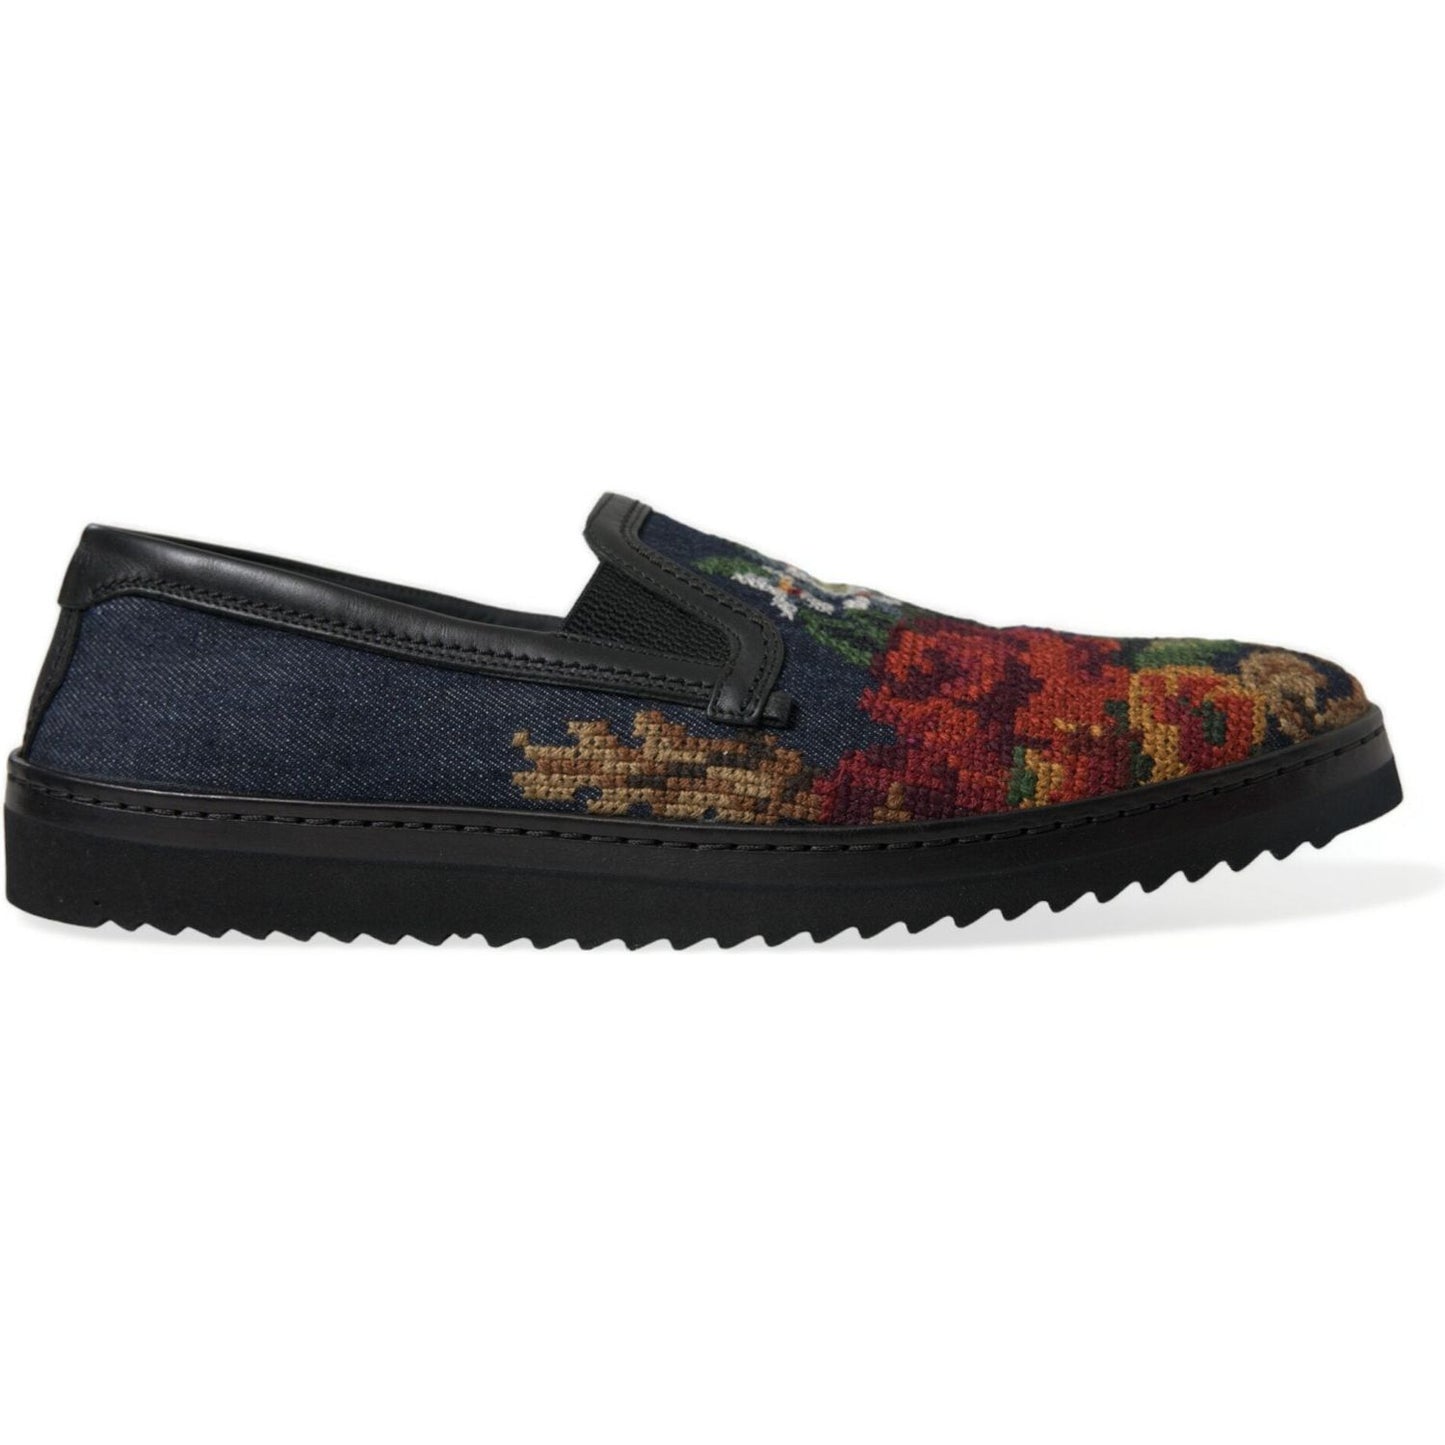 Dolce & Gabbana Elegant Multicolor Floral Loafers multicolor-floral-slippers-men-loafers-shoes